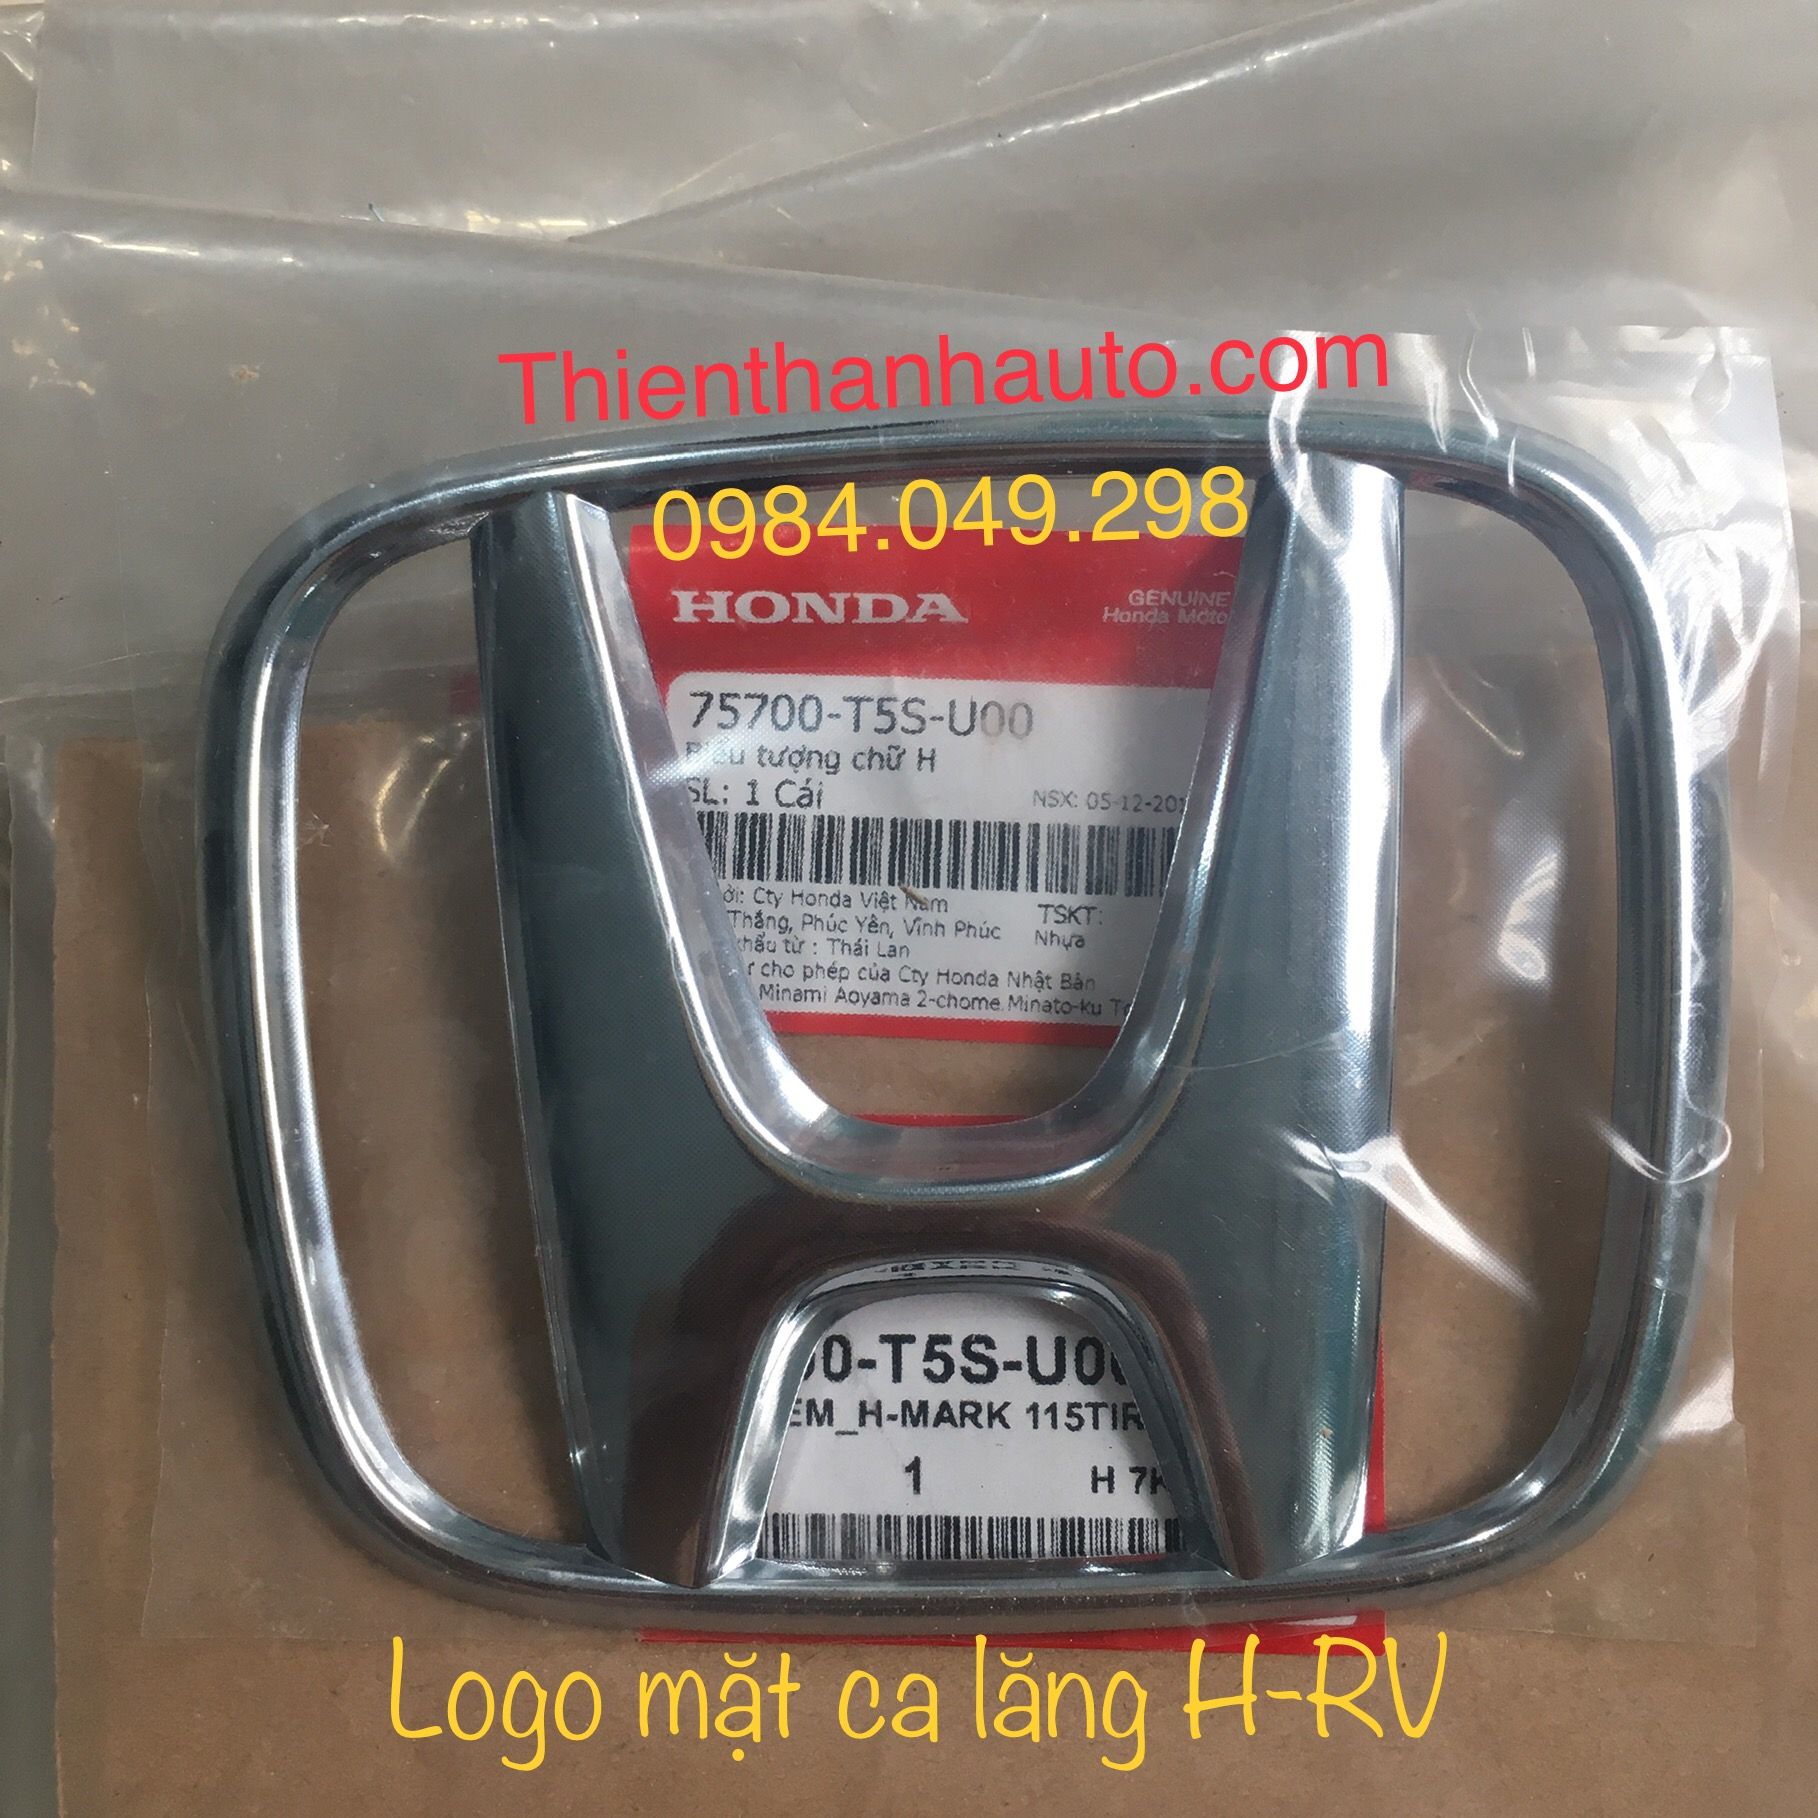 Logo chữ H trước - biểu tượng chữ H mặt ca lăng Honda HRV chính hãng - Phụ tùng ô tô Thiên Thanh